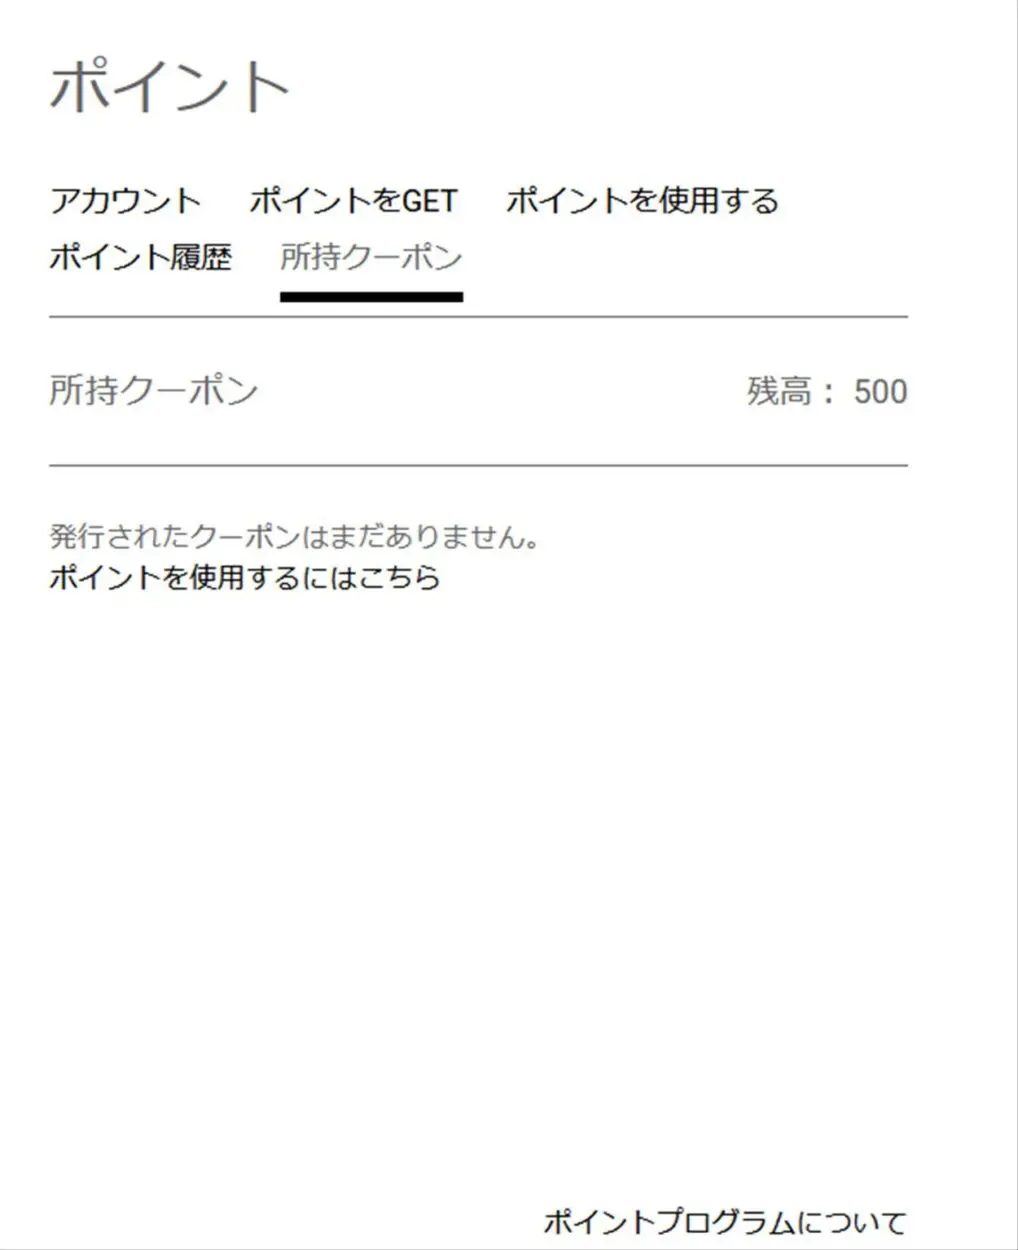 SK本舗のアカウントに５００円クーポンが付与される